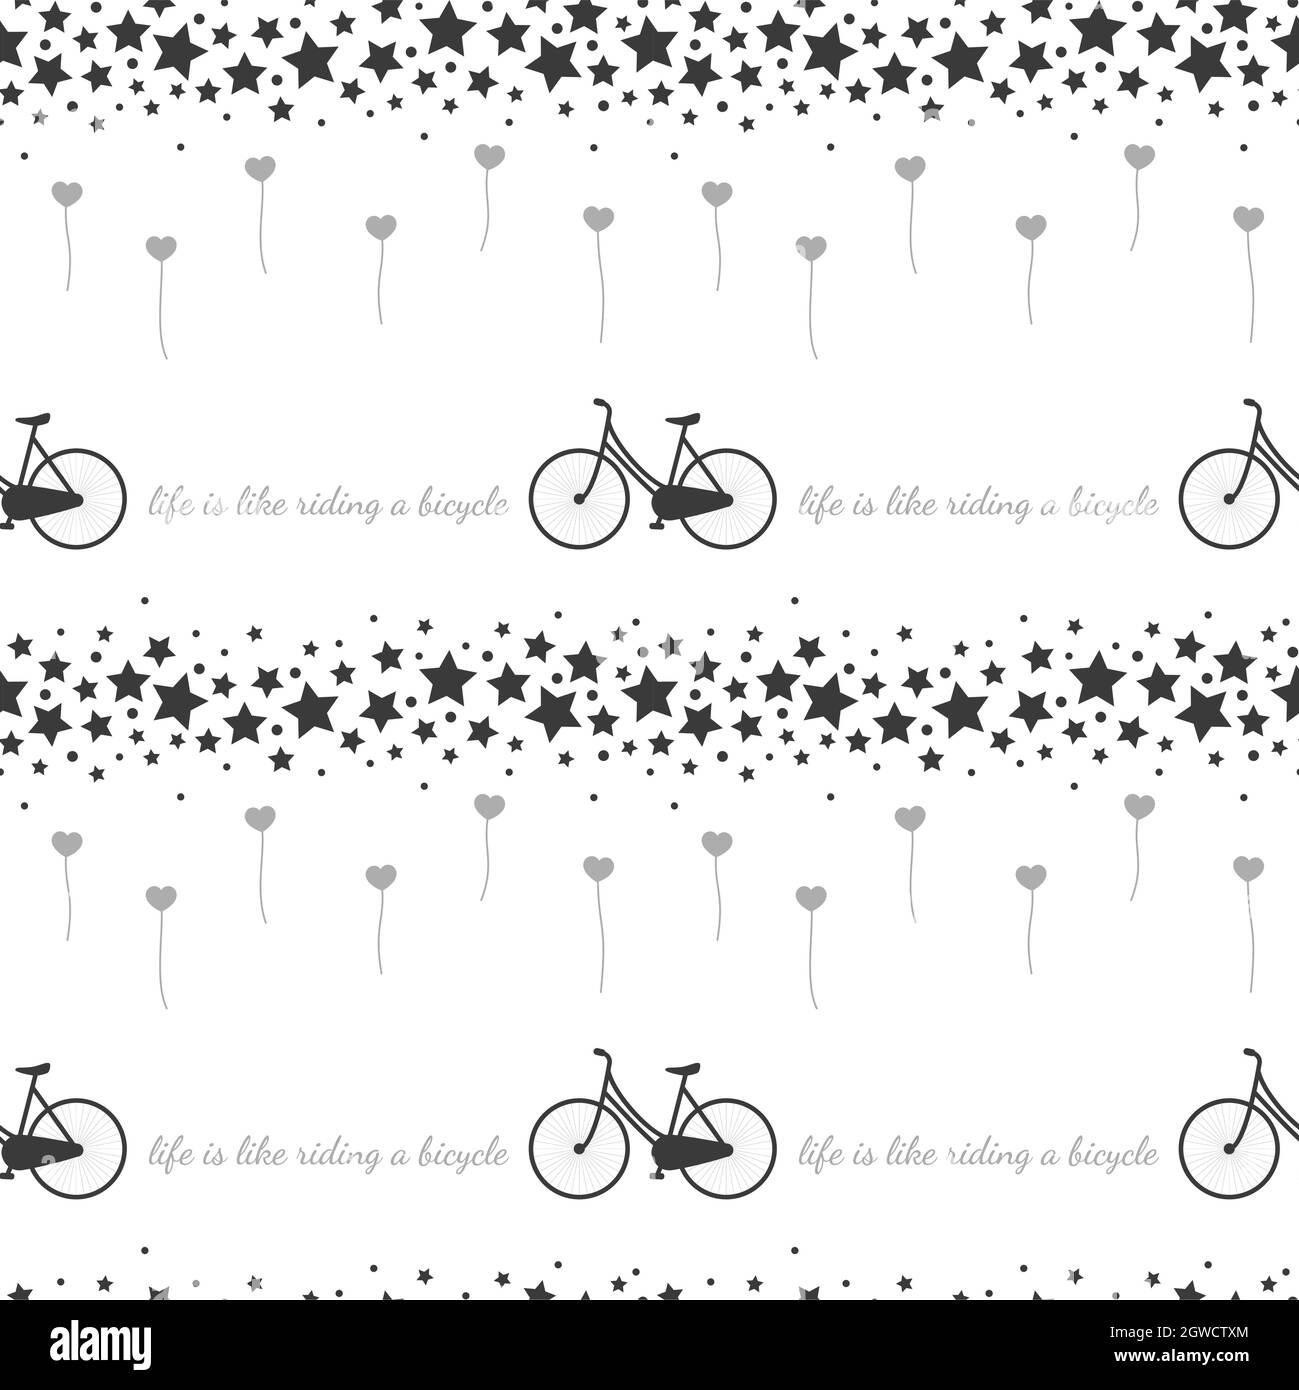 Fahrrad und Sterne Vektor nahtlose Muster. Fahrräder und Ballon schwarz-weiß-Druck. Stock Vektor